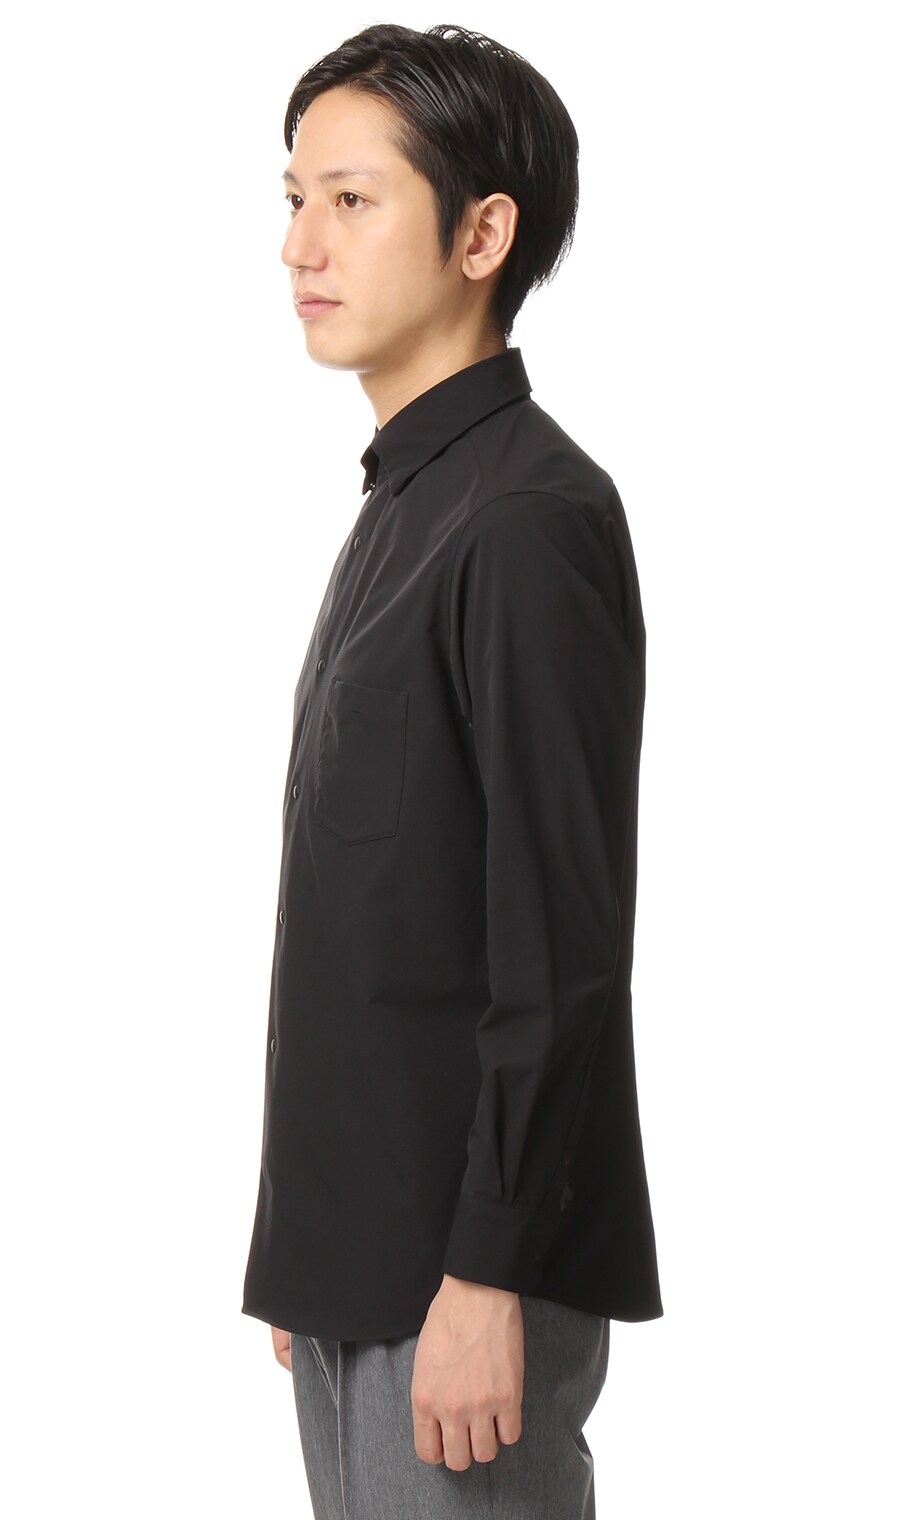 ストレッチスナップボタンダウンシャツ 7757sb194 Za Descente 紳士服 スーツ販売数世界no 1 洋服の青山 公式通販